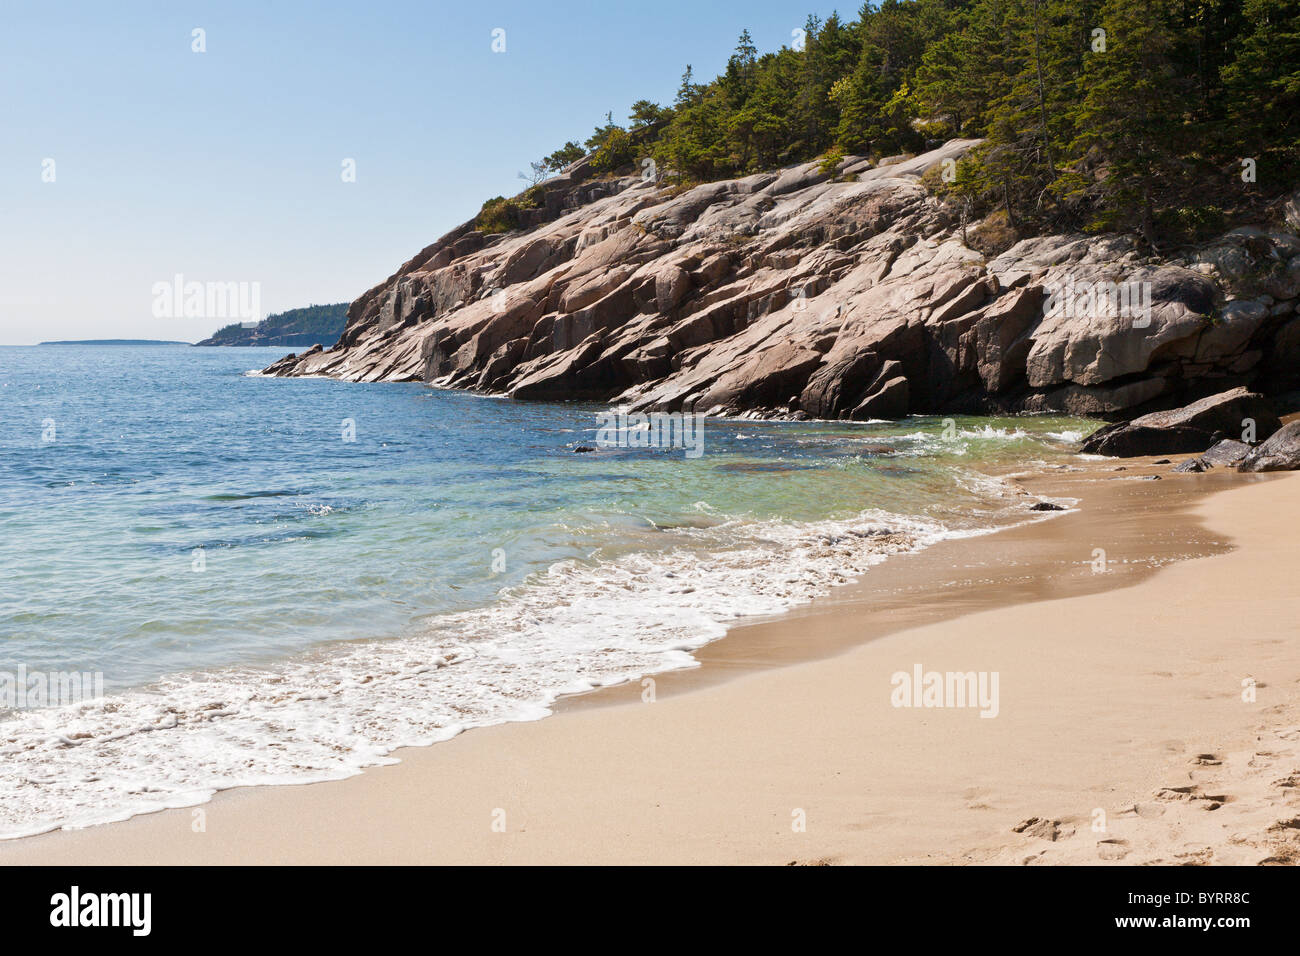 Sand Beach at Acadia National Park near Bar Harbor, Maine Stock Photo